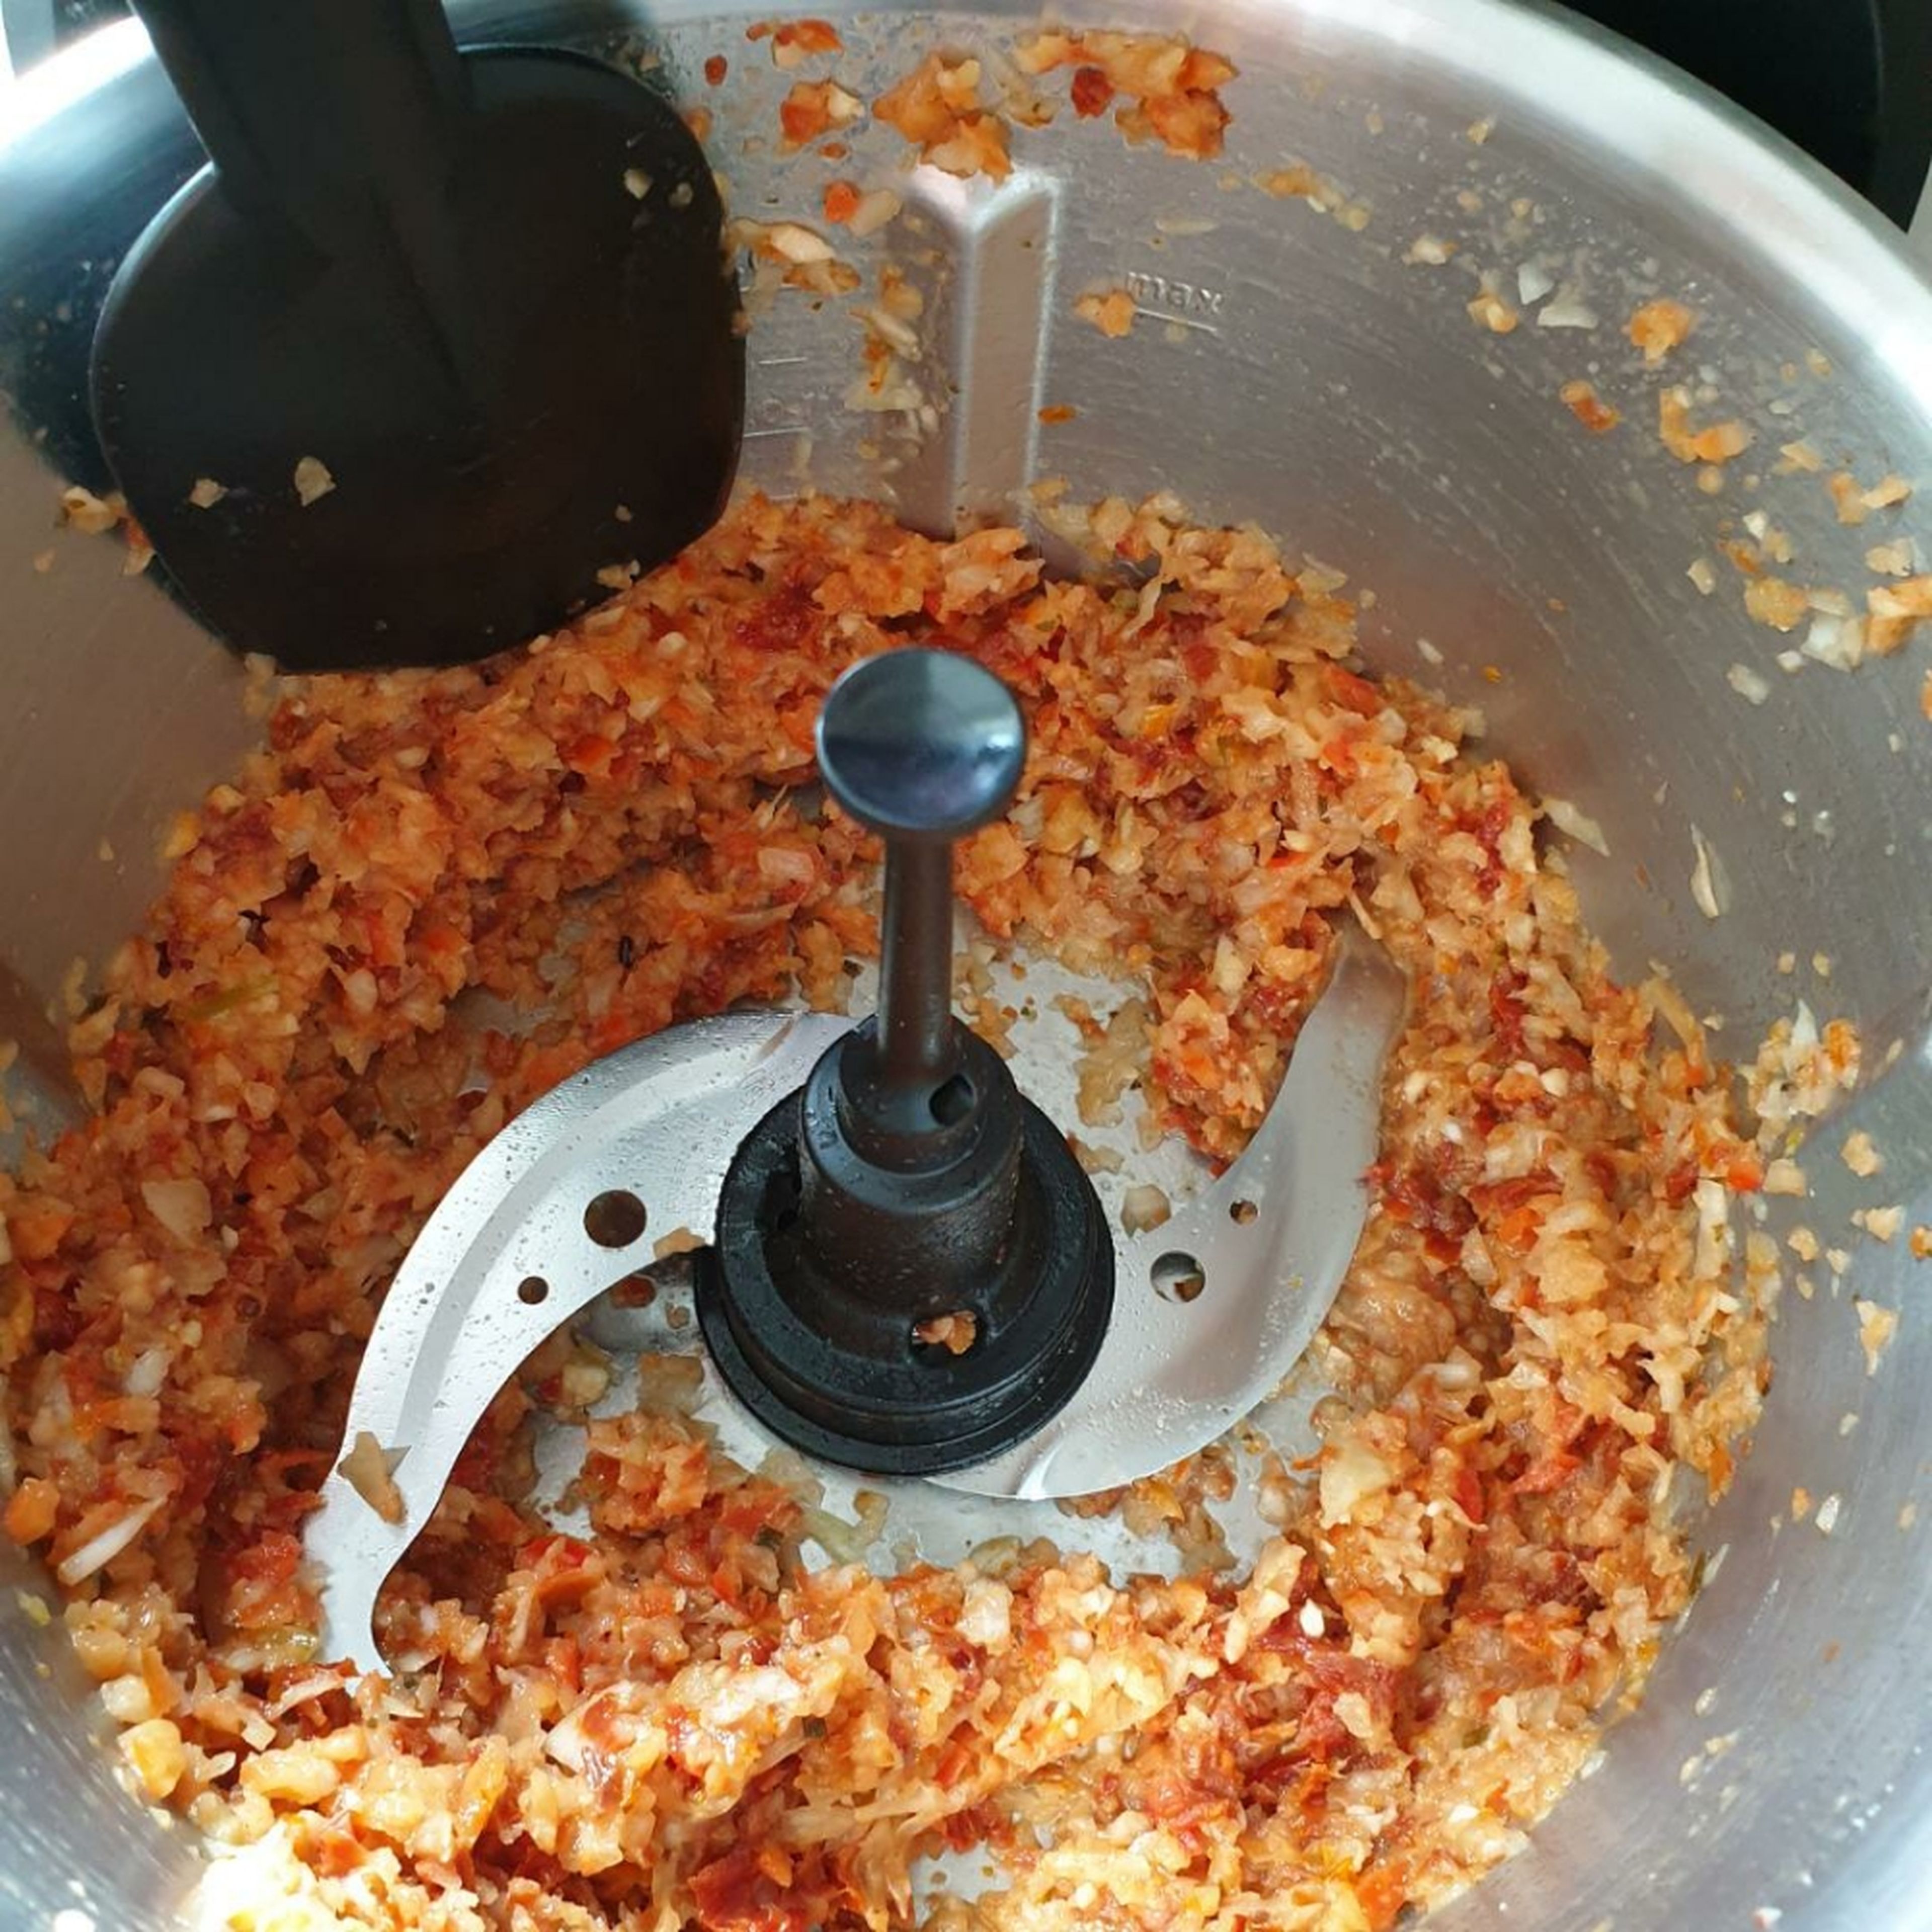 In den Topf die Zwiebel, die Knoblauchzehen, eine grob geschnittene Paprika und 10 getrocknete Tomaten geben. Den Deckel mit Messbecher schließen und alles zerkleinern (Universalmesser | Stufe 16 | 20 Sekunden).  Das Universalmesser herausnehmen und den 3D-Rührer einsetzen. Das Olivenöl dazu geben und alles bei geschlossenem Deckel, ohne Messbecher anbraten (3D-Rührer | Stufe 3 | 140°C | 5 Minuten).